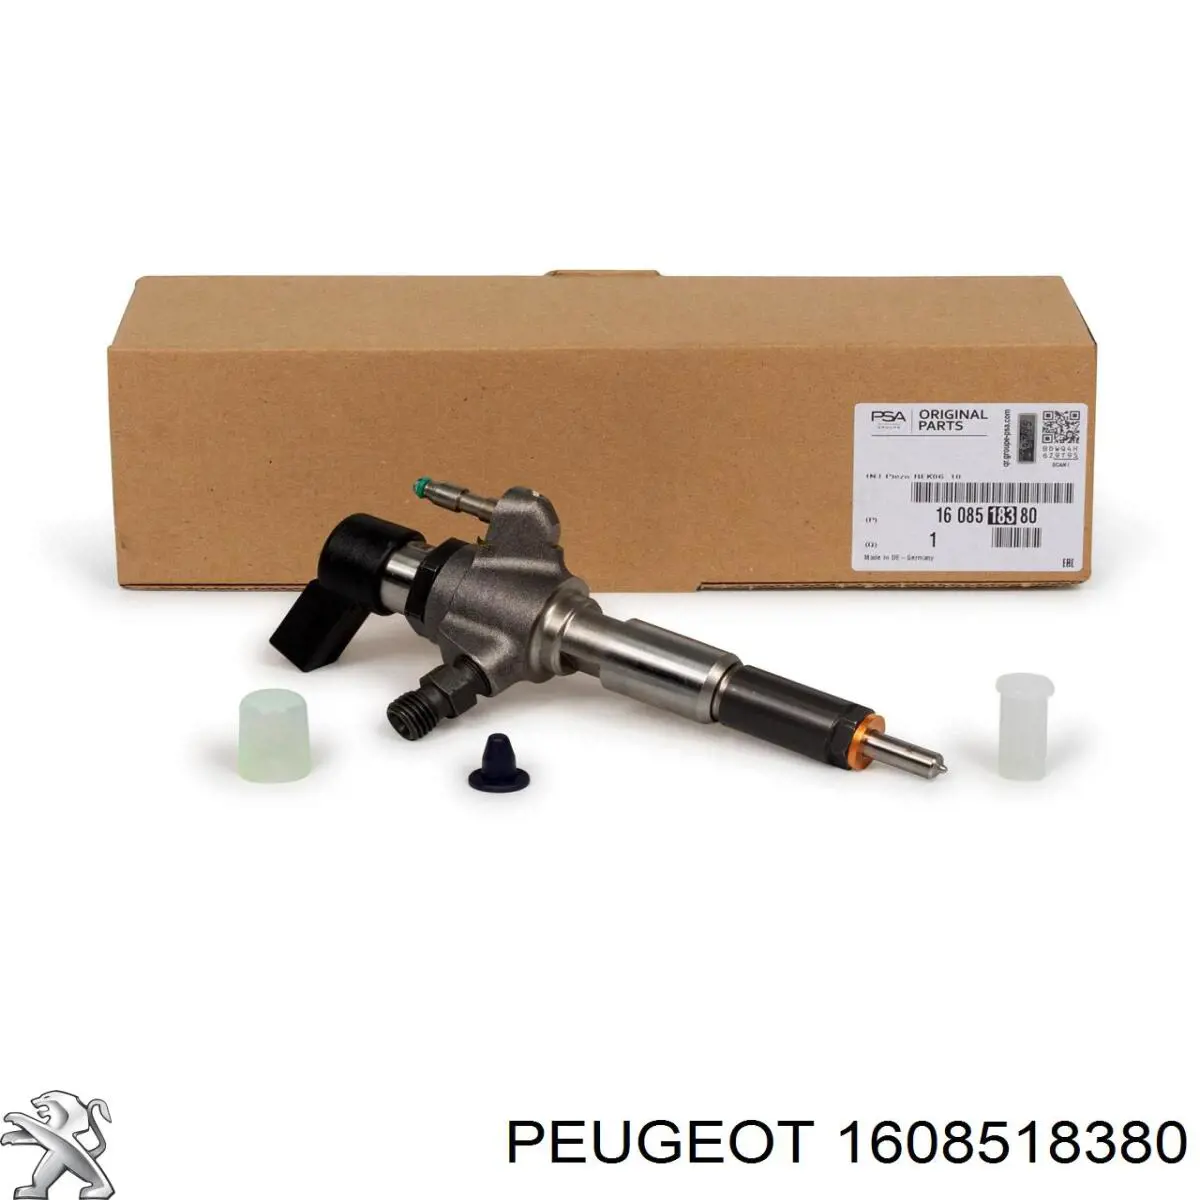 1608518380 Peugeot/Citroen injetor de injeção de combustível